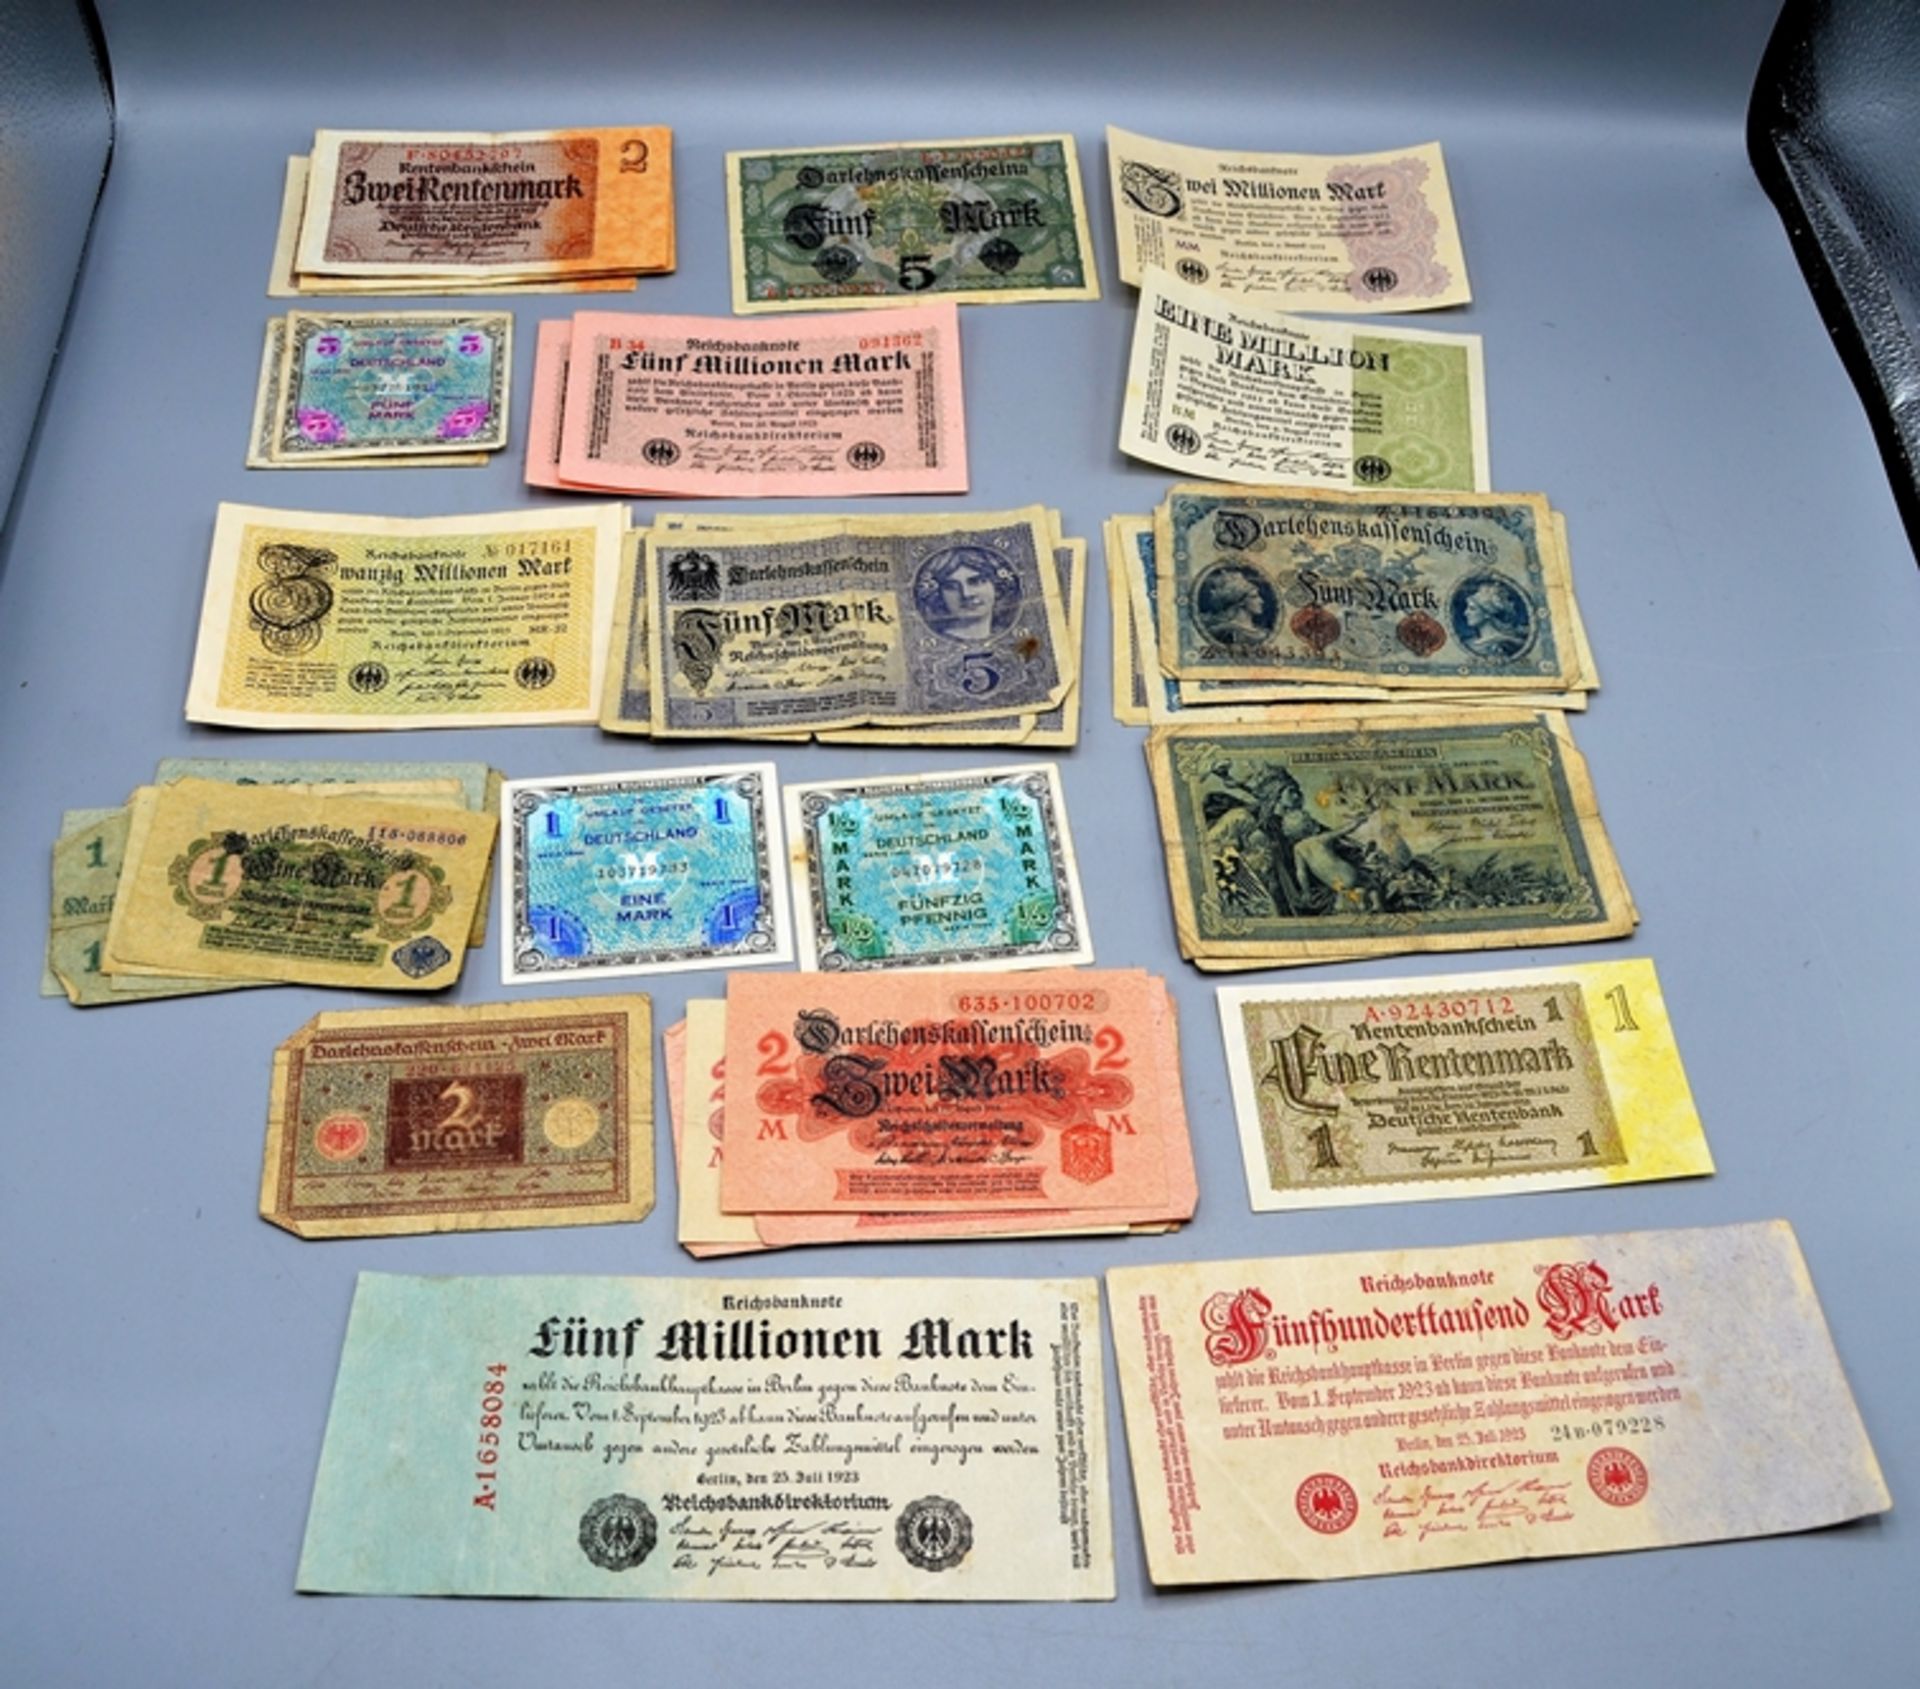 Banknoten Sammlung groß ca. 1,4 kg, darunter Reichsbanknoten Rentenbankscheine Inflationsgeld Darle - Image 7 of 8